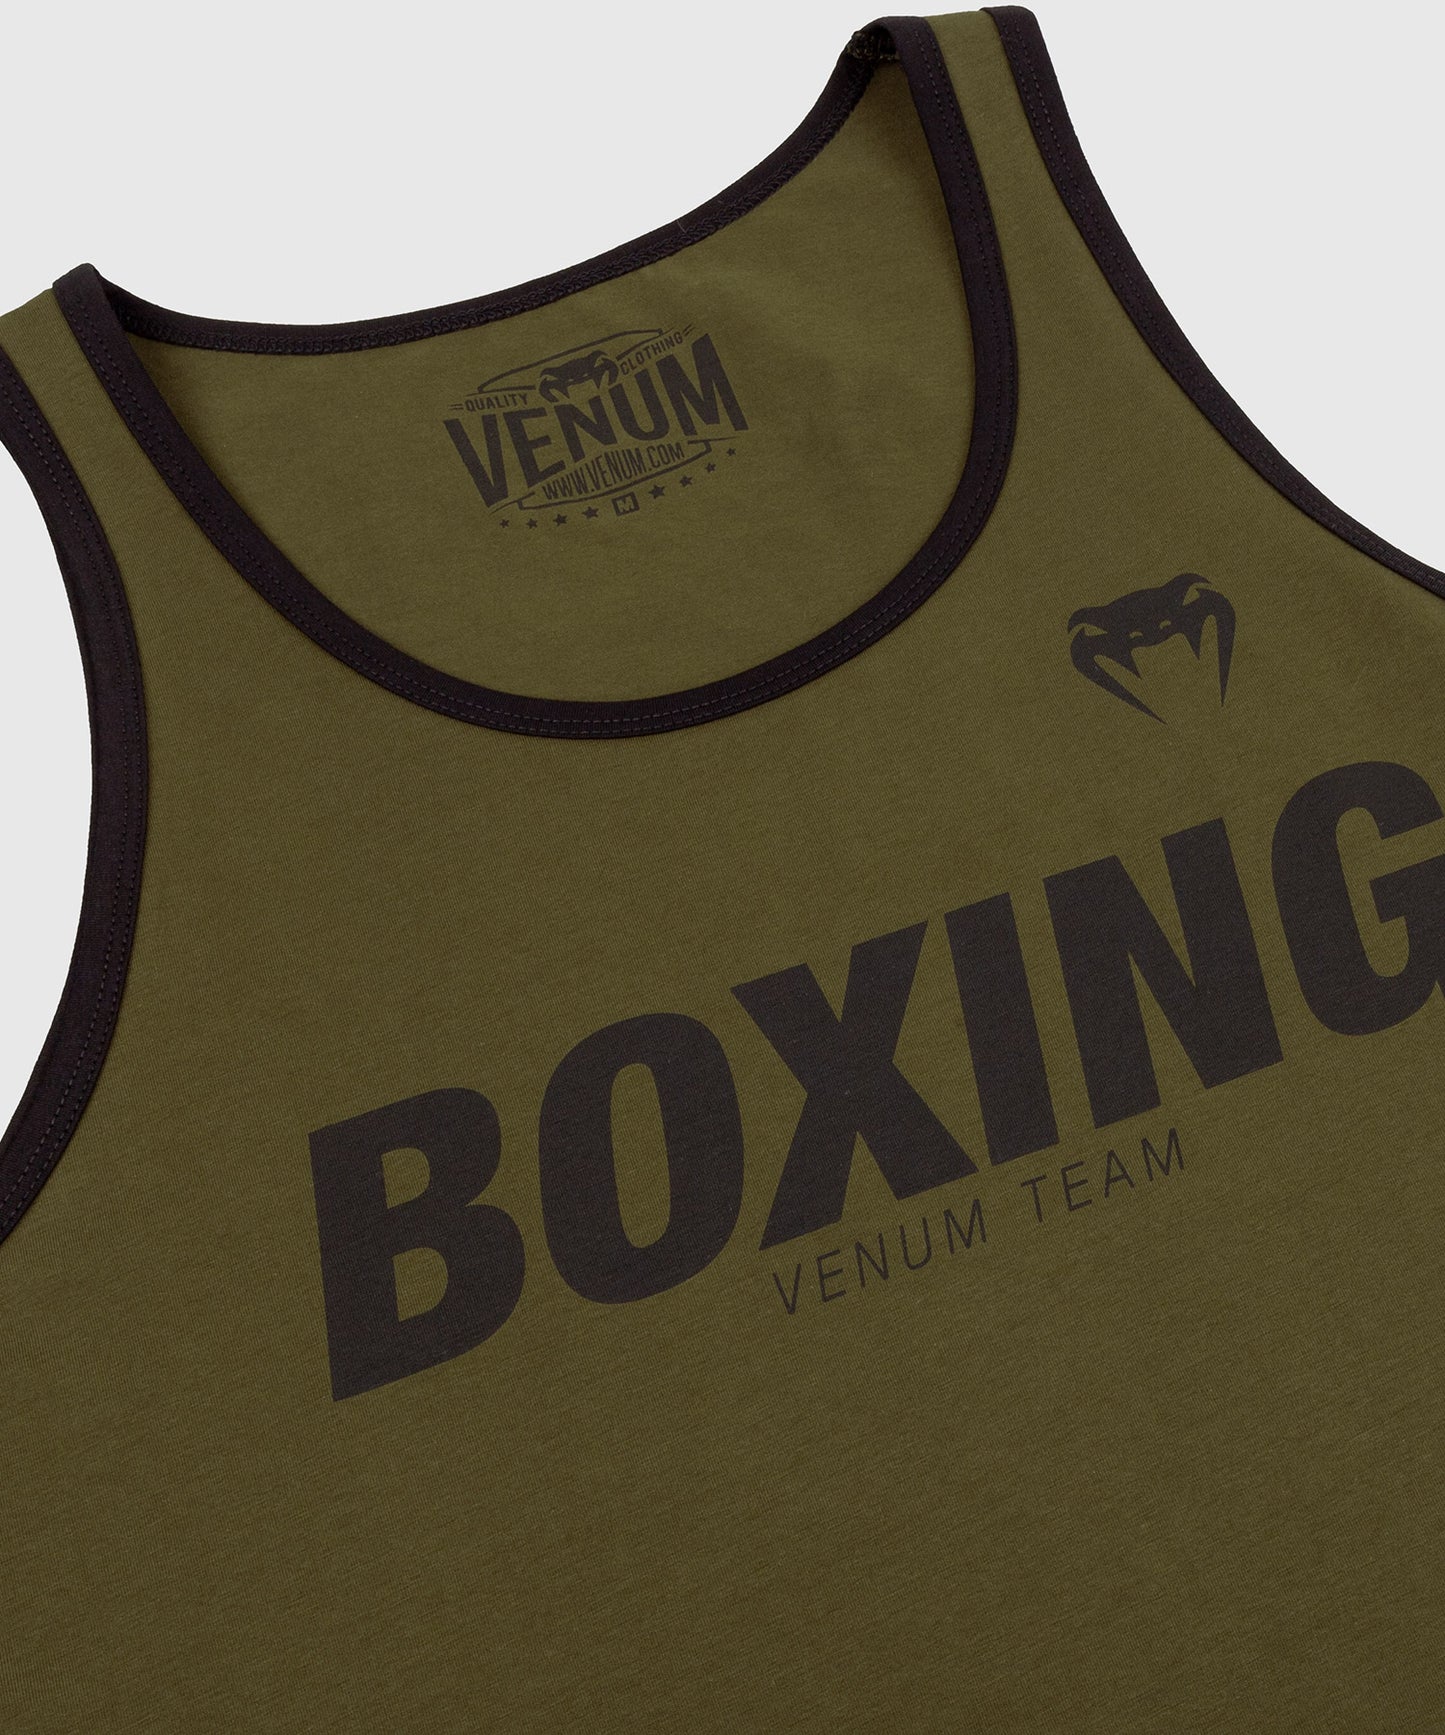 Venum Boxing VT Tank Top - Khaki/Black